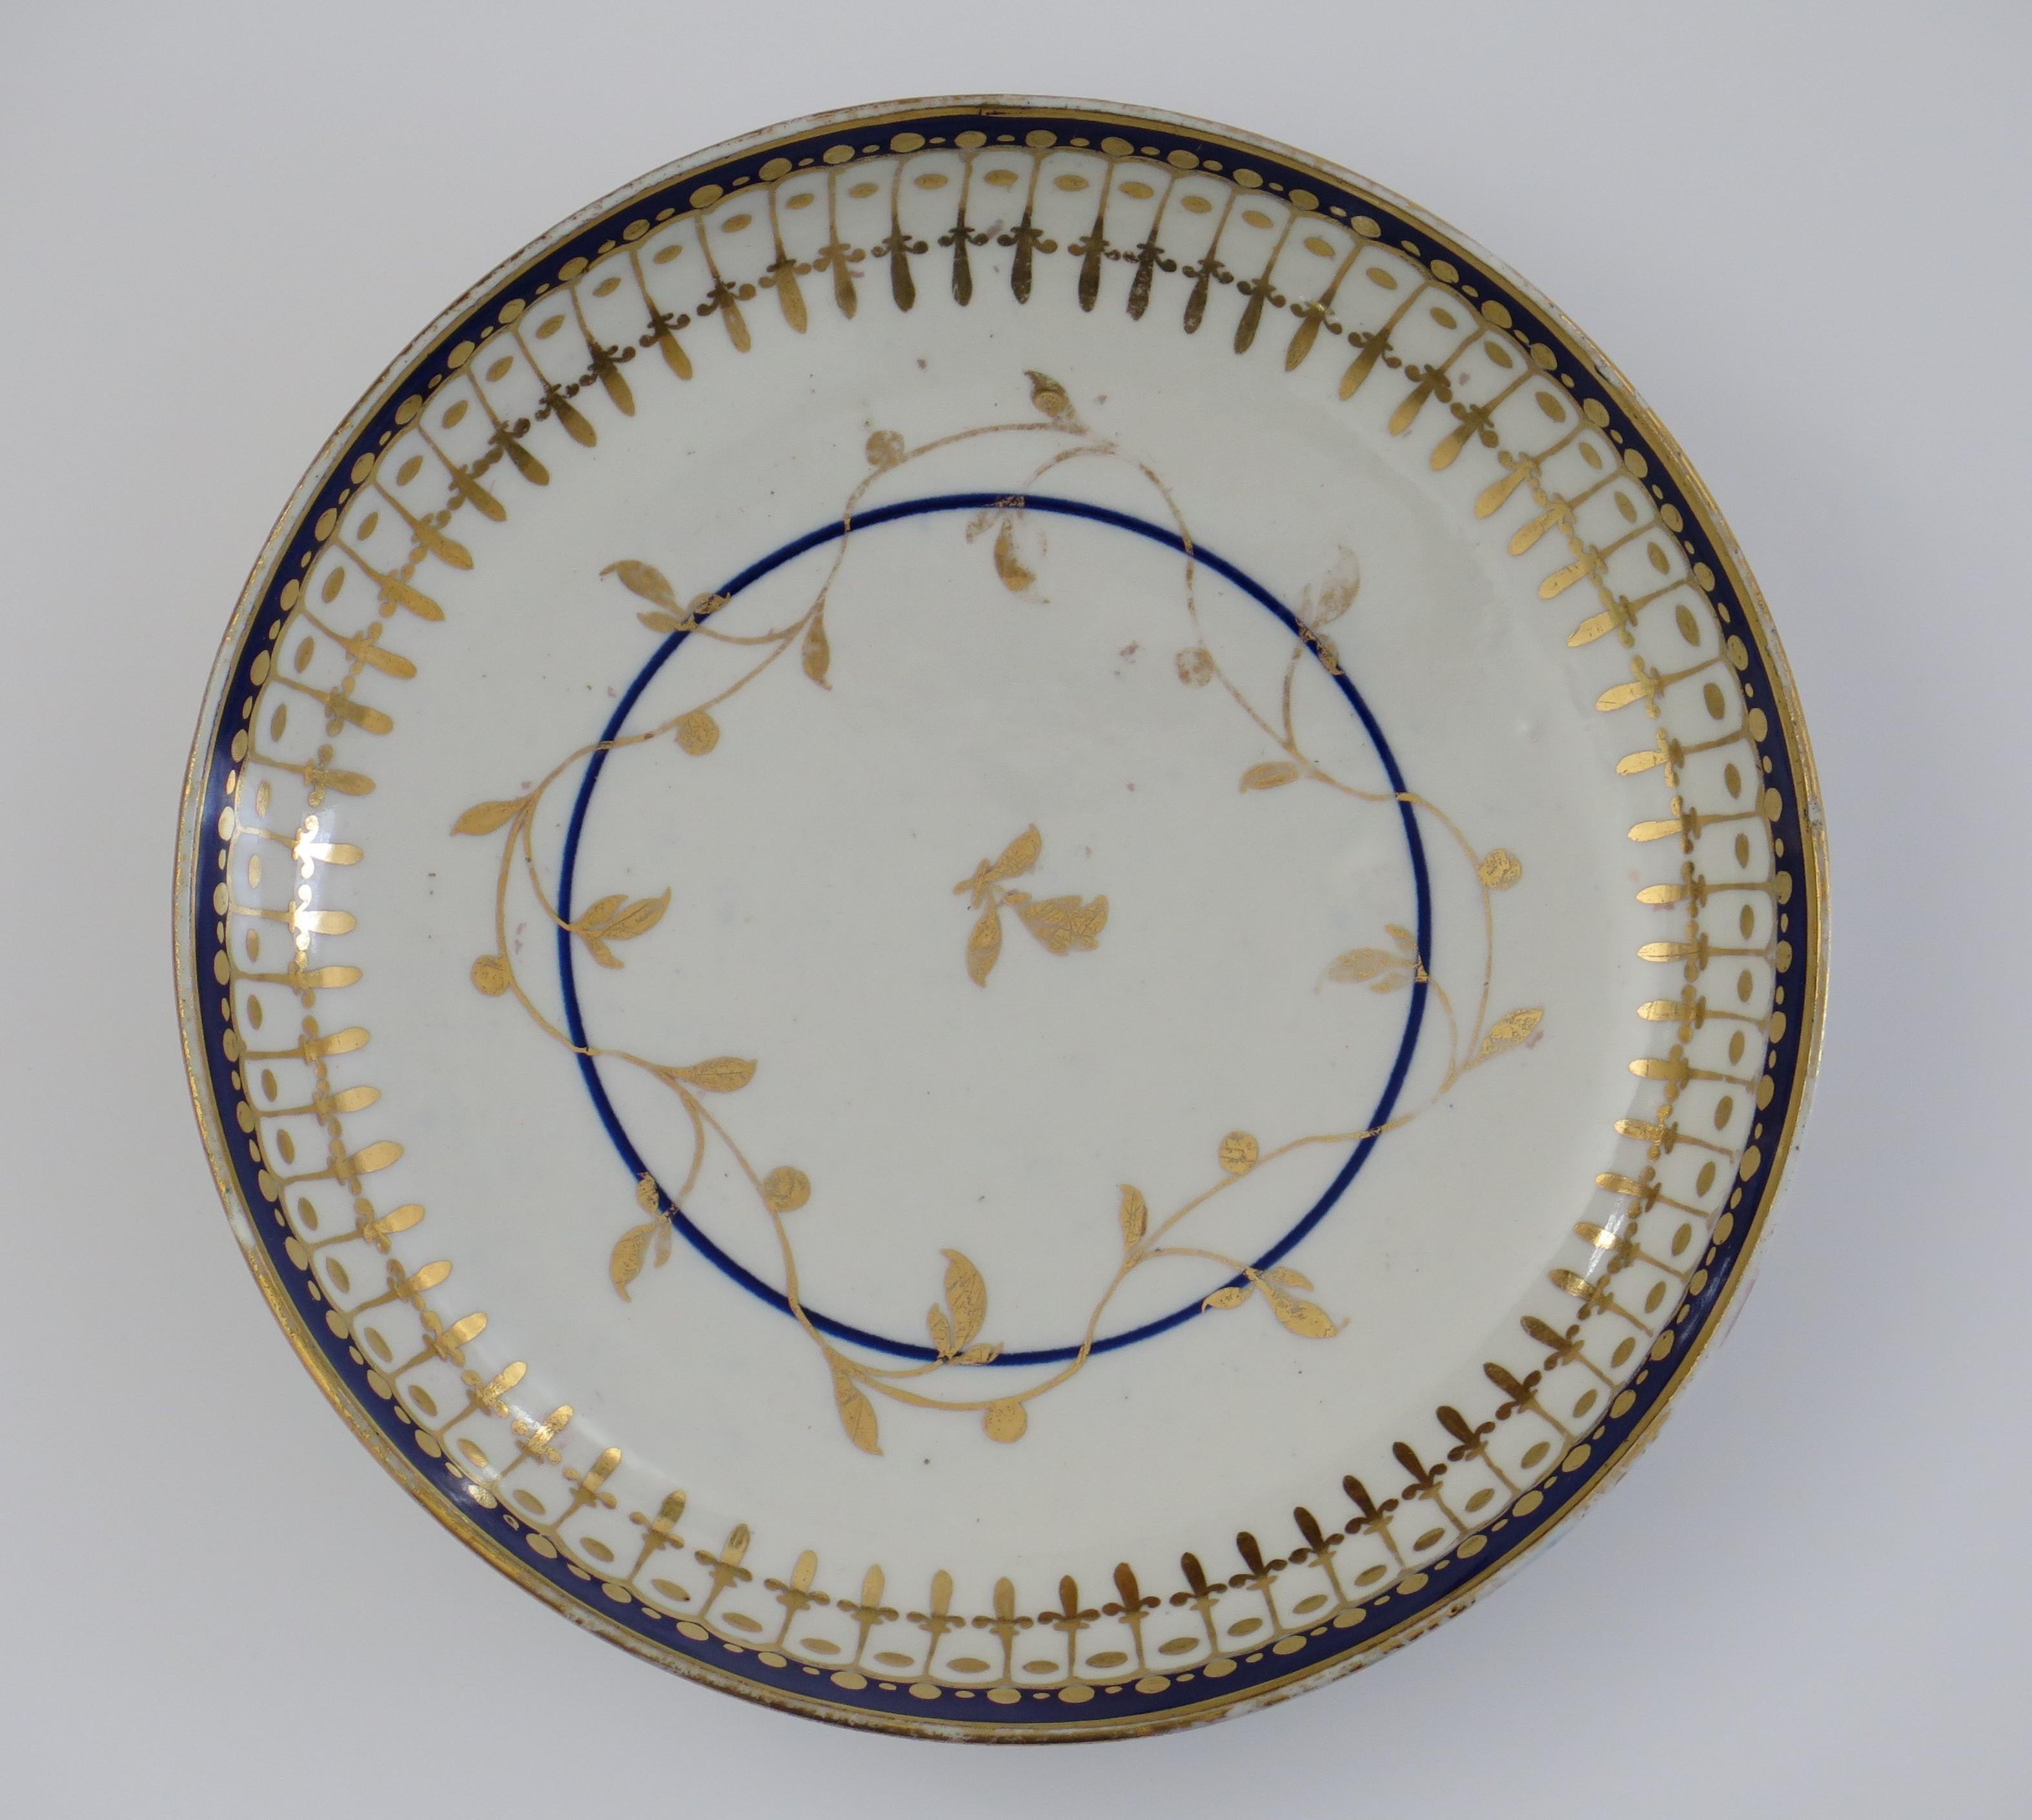 Dies ist eine gute späten 18. Jahrhundert Worcester Porzellan Slop Schüssel oder Untertasse Dish mit einer kombinierten blauen und goldenen Muster, voll markiert und aus der Zeit um 1780.

Die Schale ist mit einem klassischen Muster aus